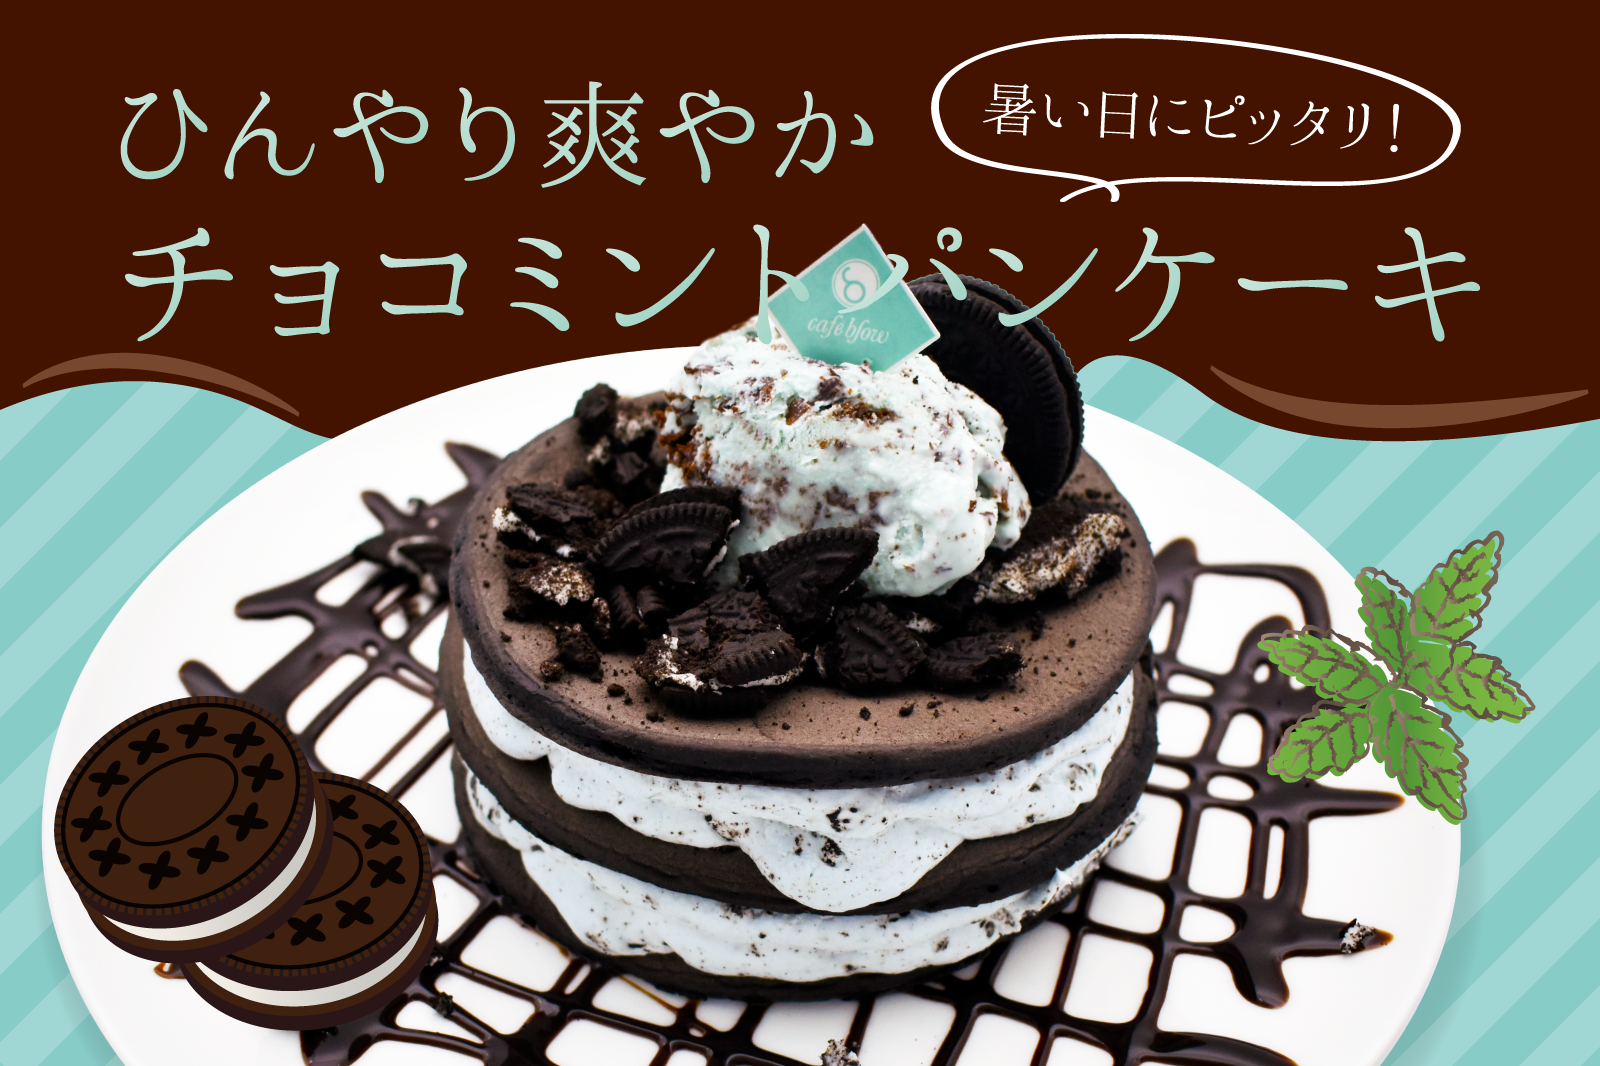 夏にピッタリの爽やかパンケーキ チョコミントパンケーキが新登場 株式会社blow Inのプレスリリース